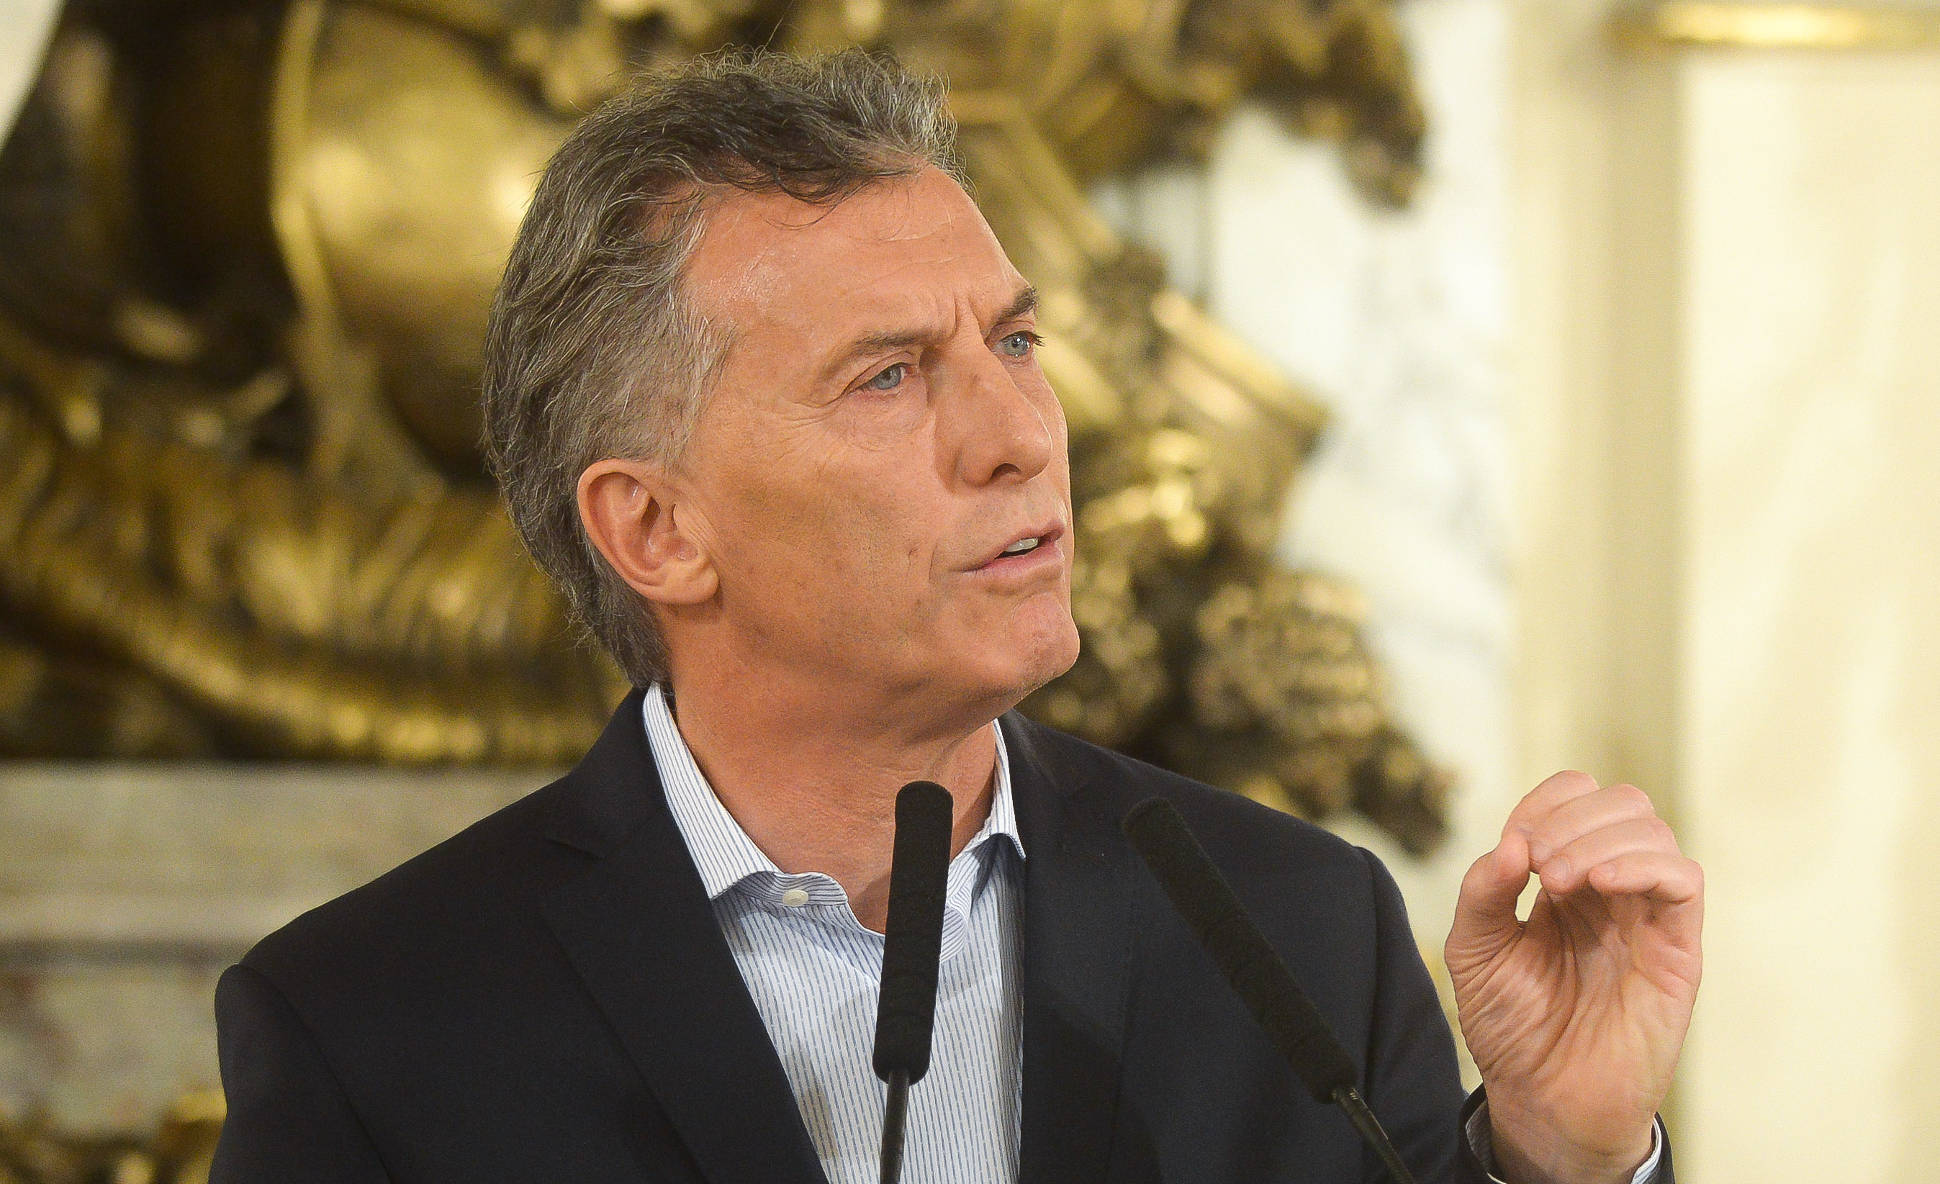 Macri: Demostramos que la democracia funciona